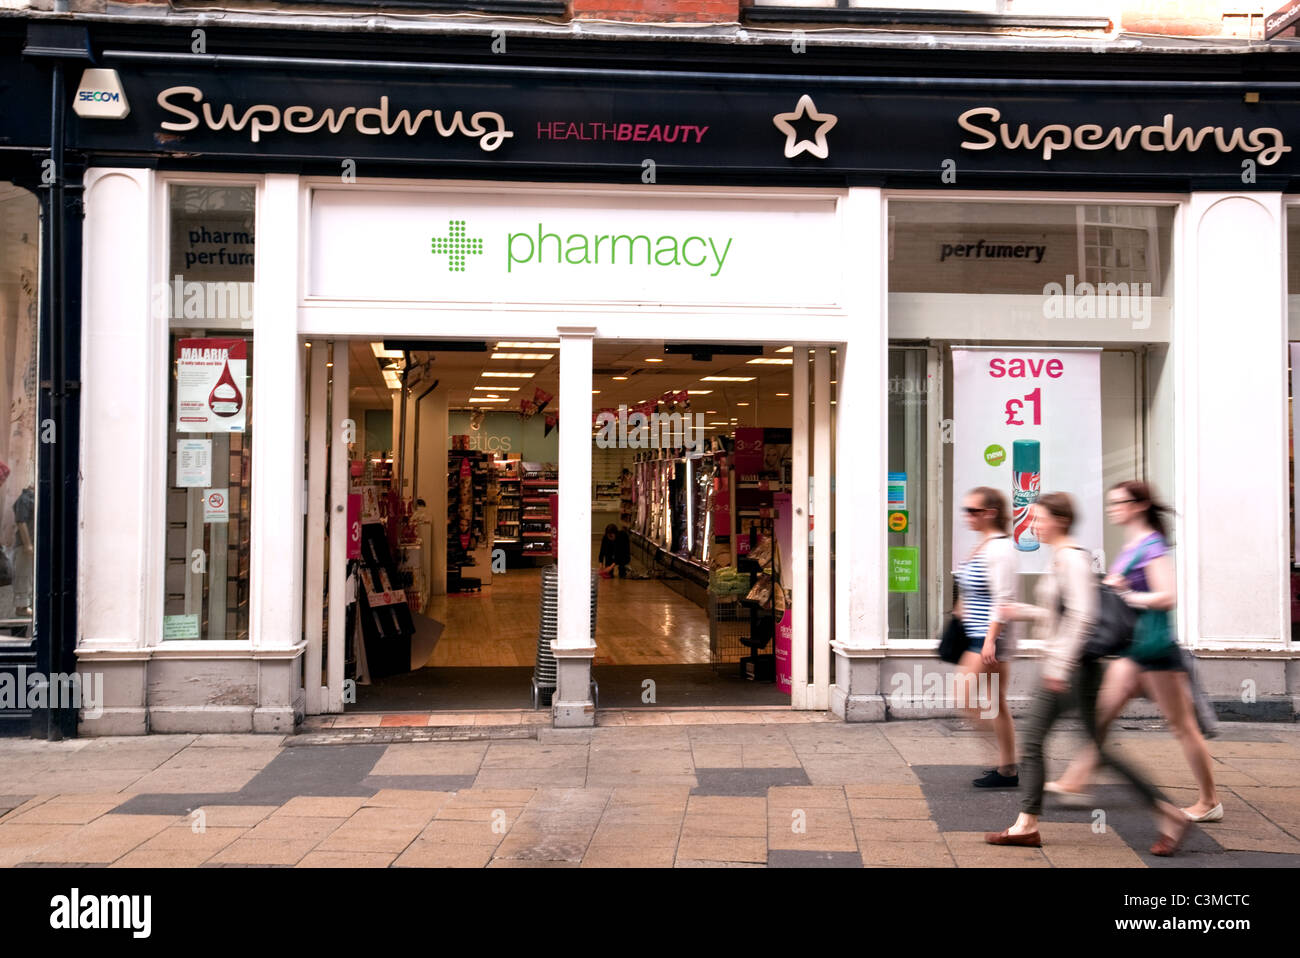 Superdrug pharmacy, Cambridge, UK Stock Photo